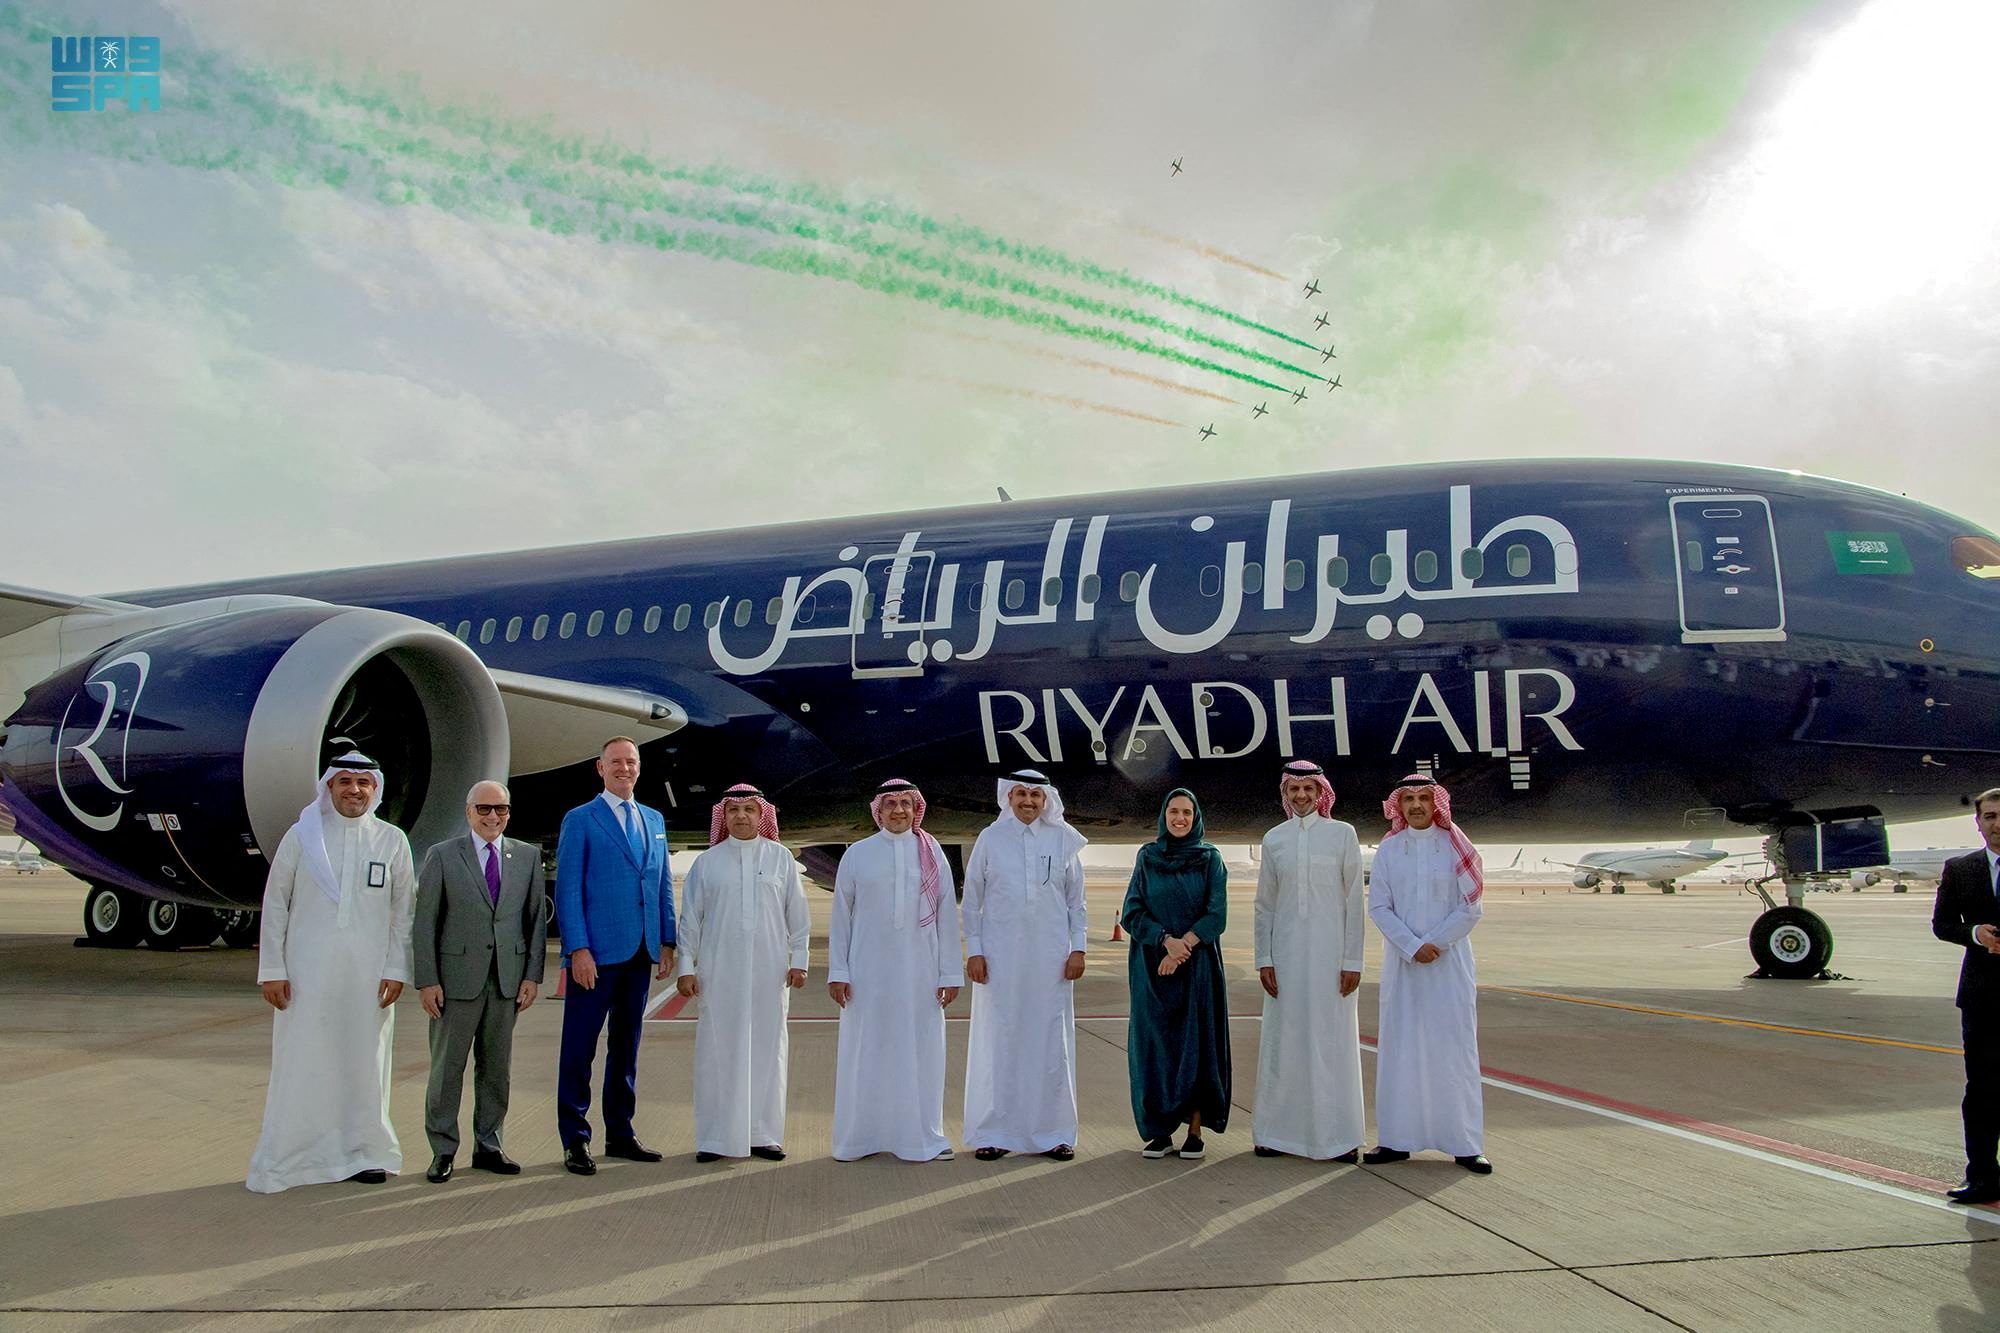 Riyadh Air cabin Crew